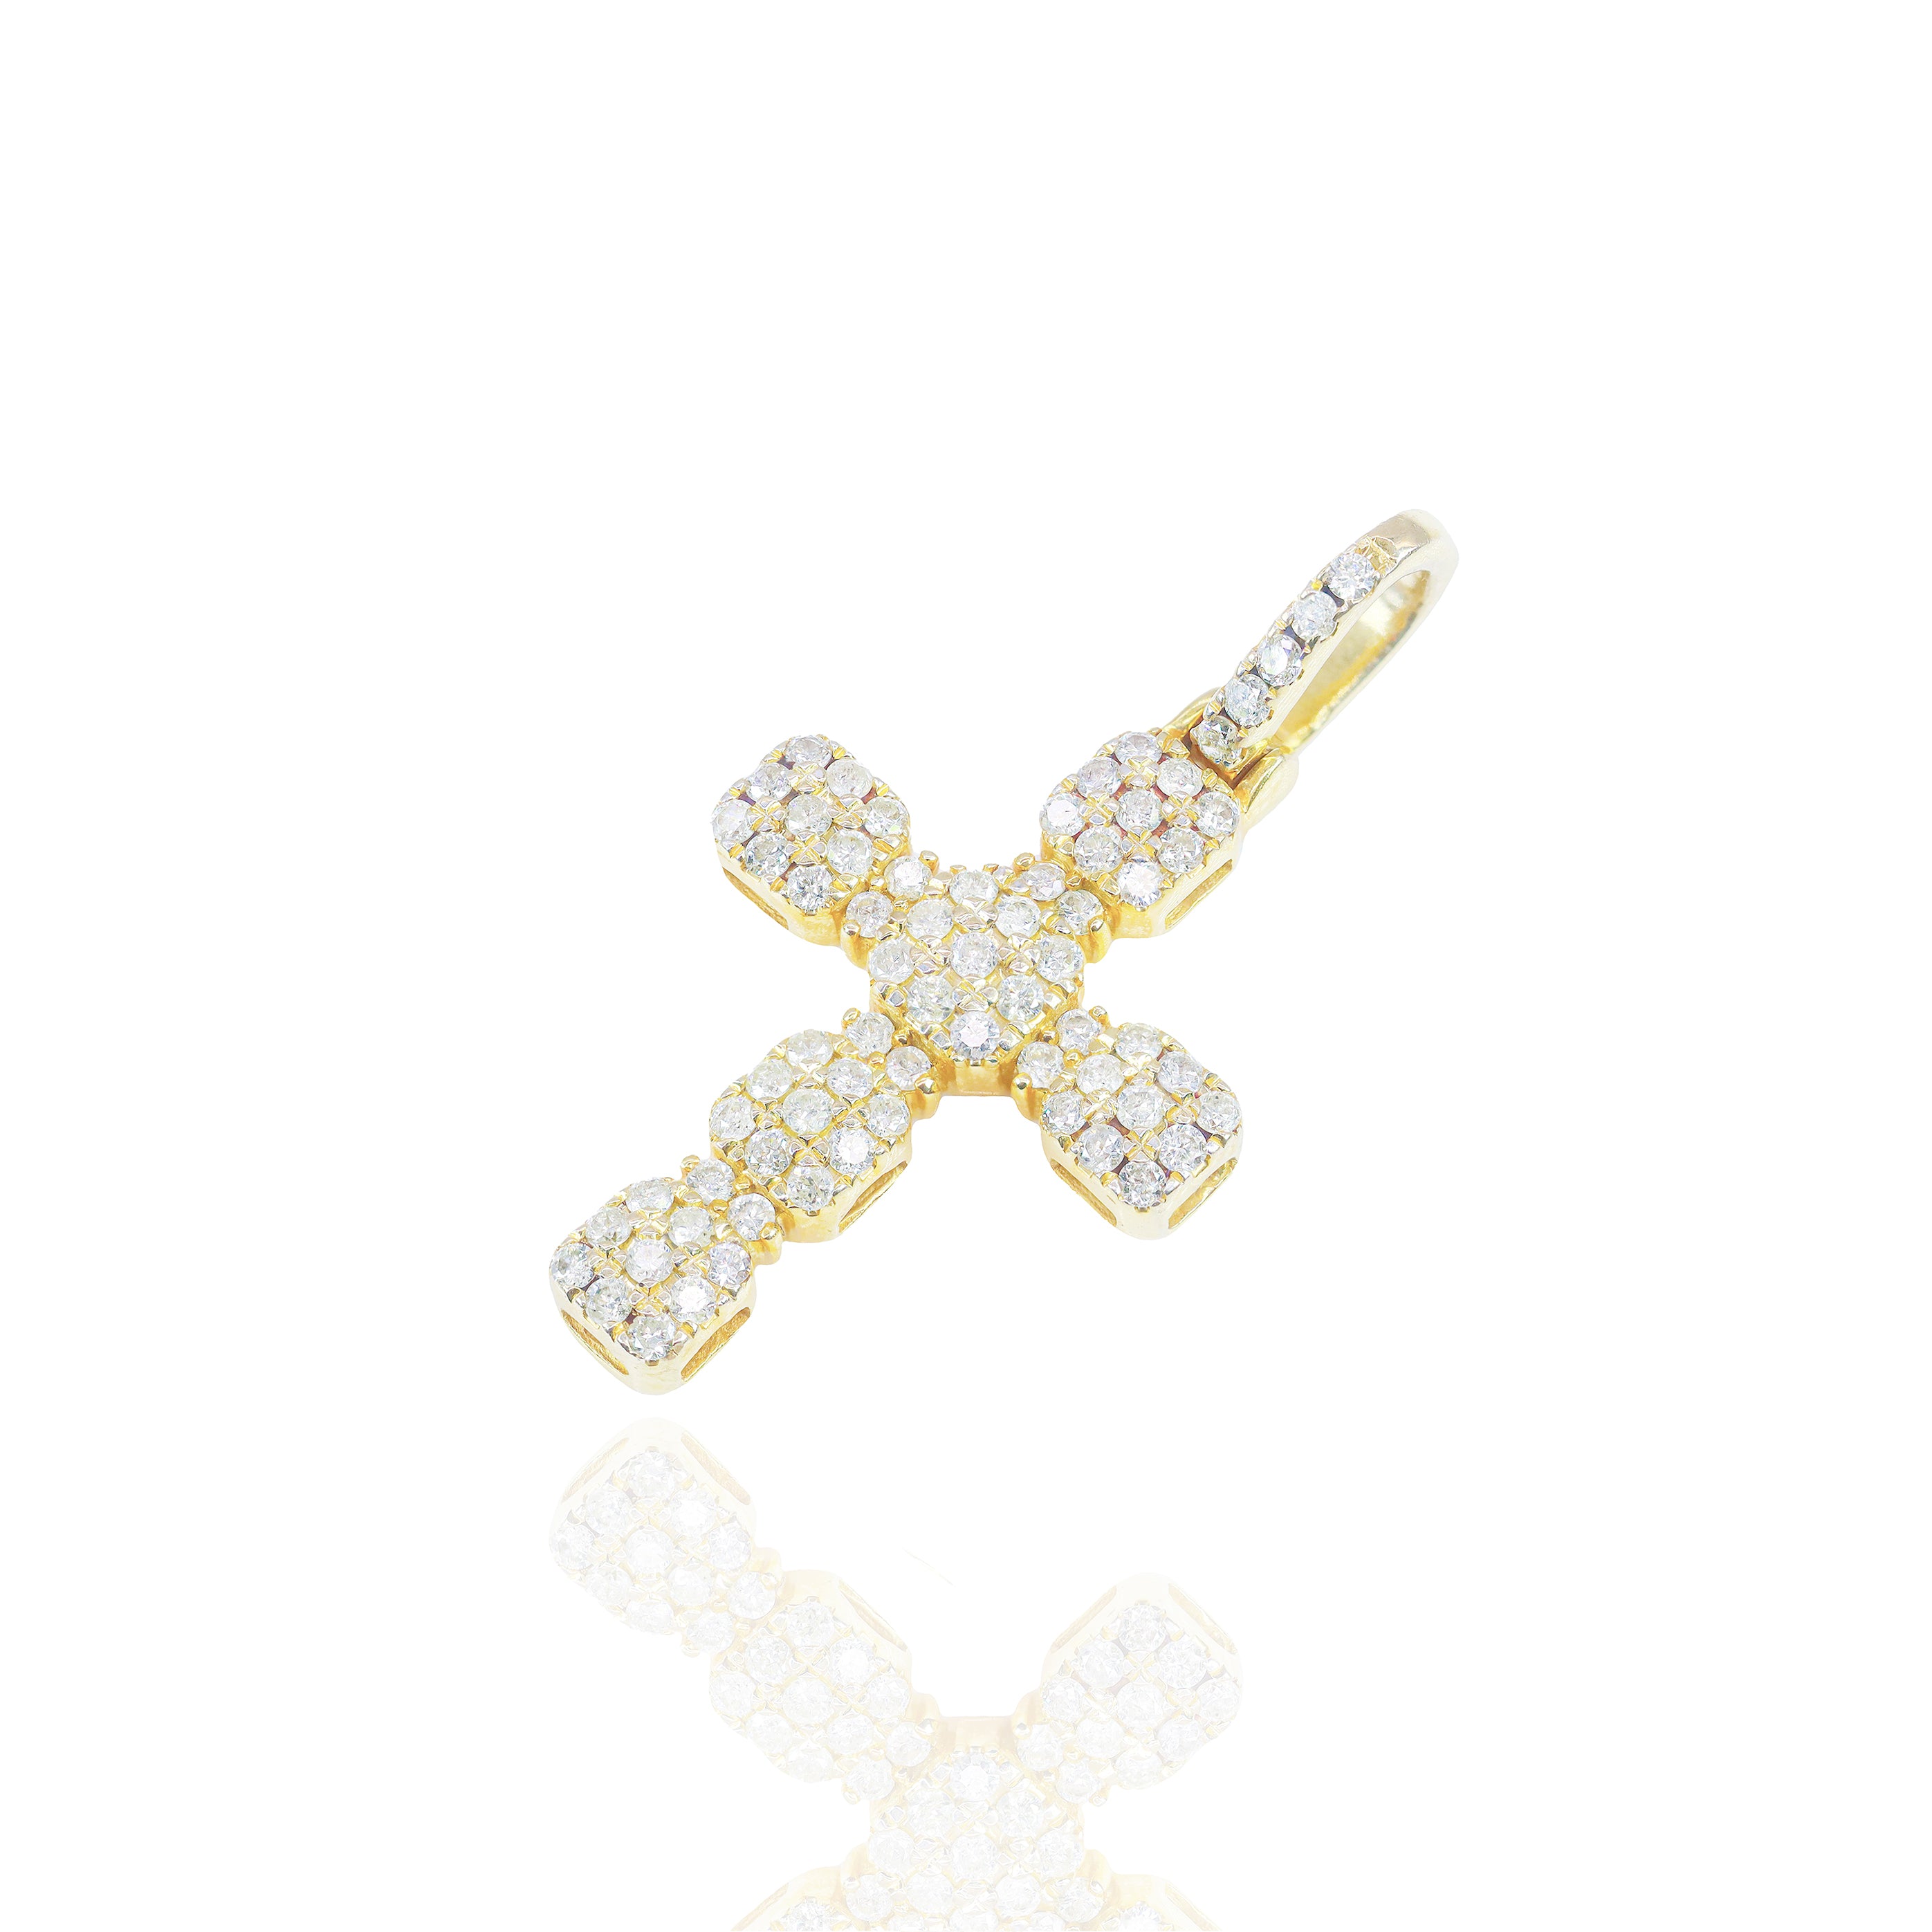 Mini Golden Cross with Round Diamonds Pendant